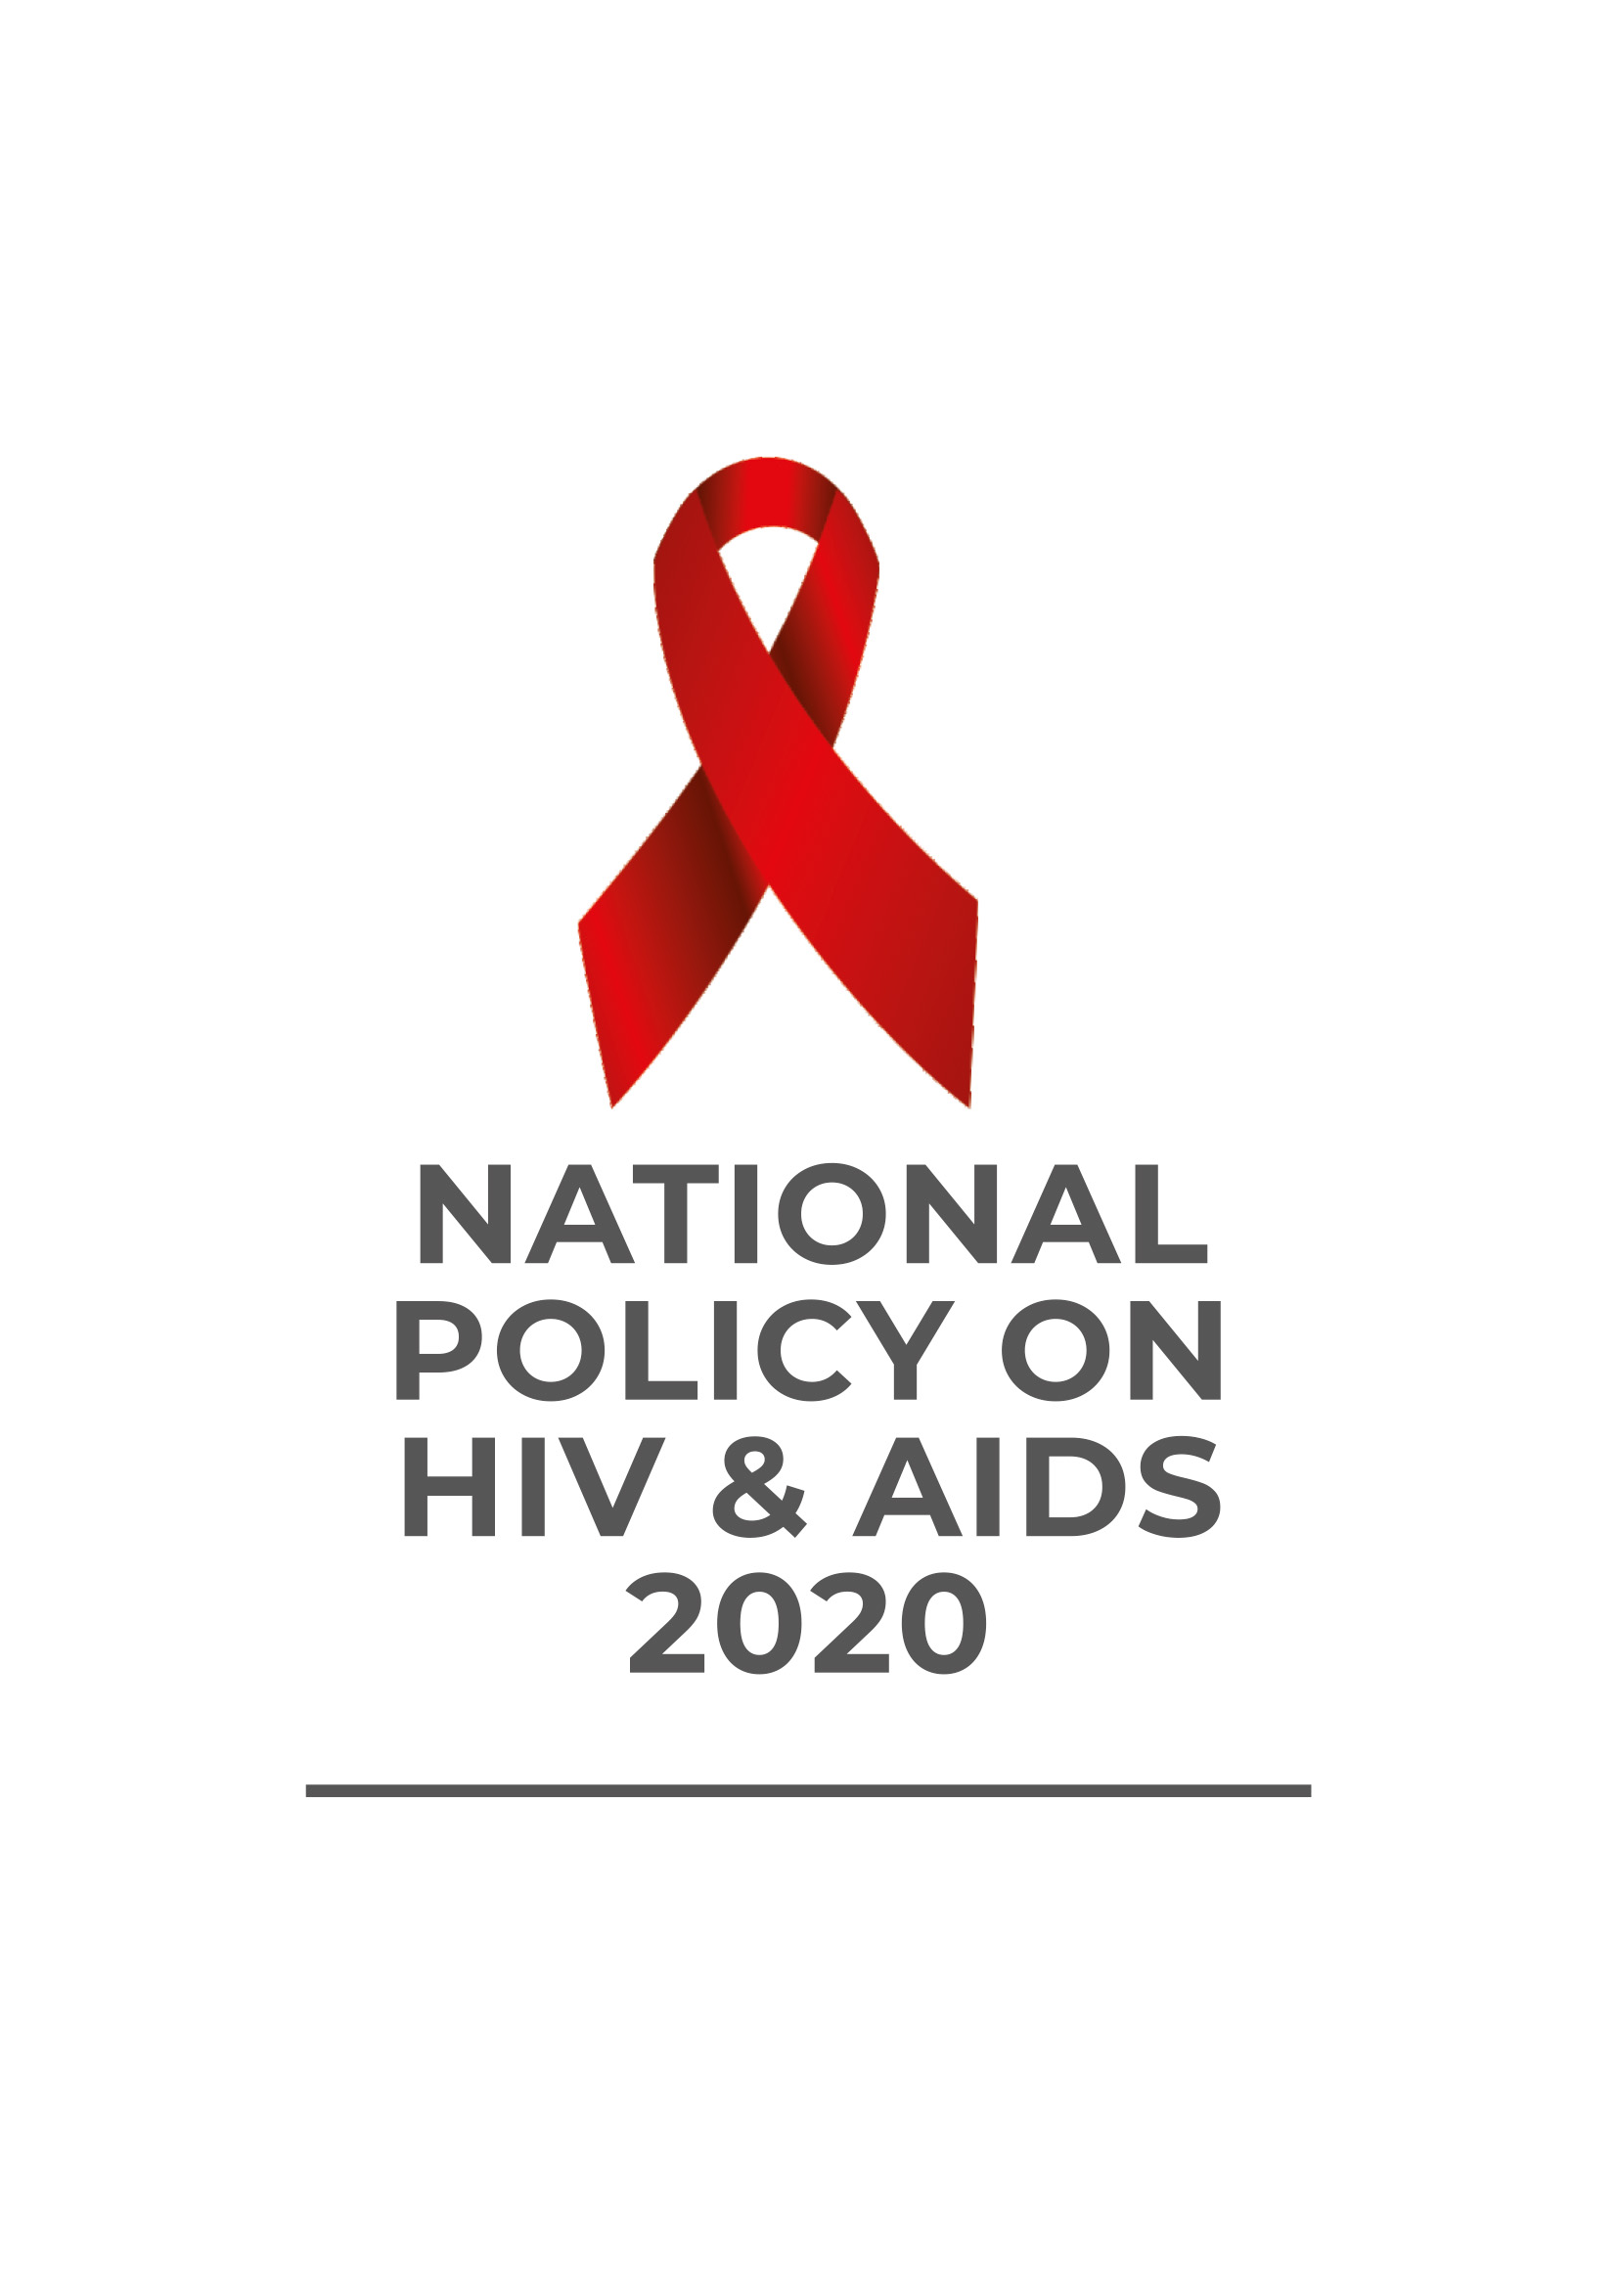 Política nacional de Nigeria sobre el VIH y el SIDA 2020